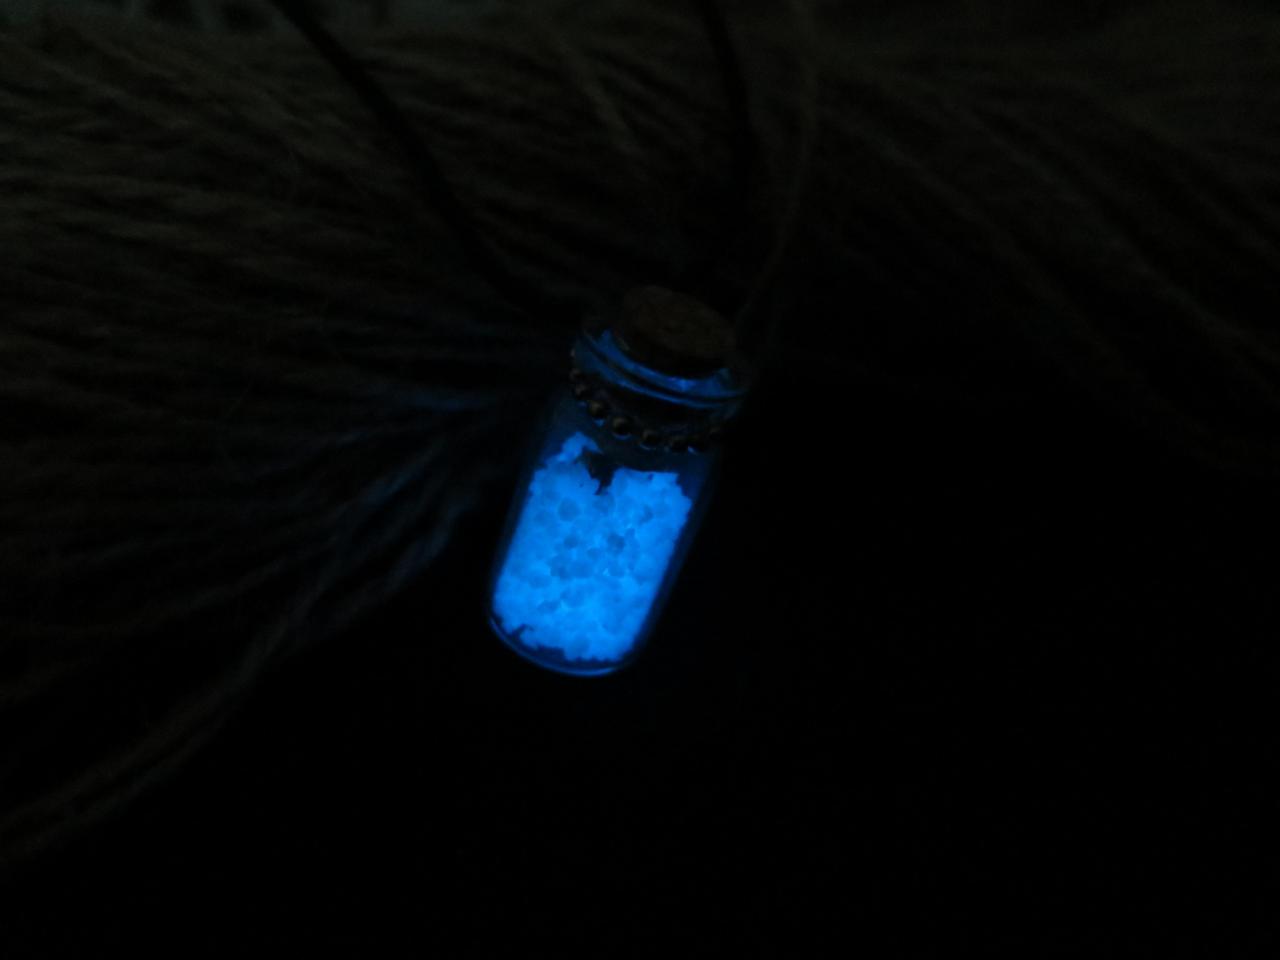 Shipping Blue Wishing Bottle Glowing Necklace , Glow Bracelet In The Dark, Glowing Jewelry,glow Pendant Necklace